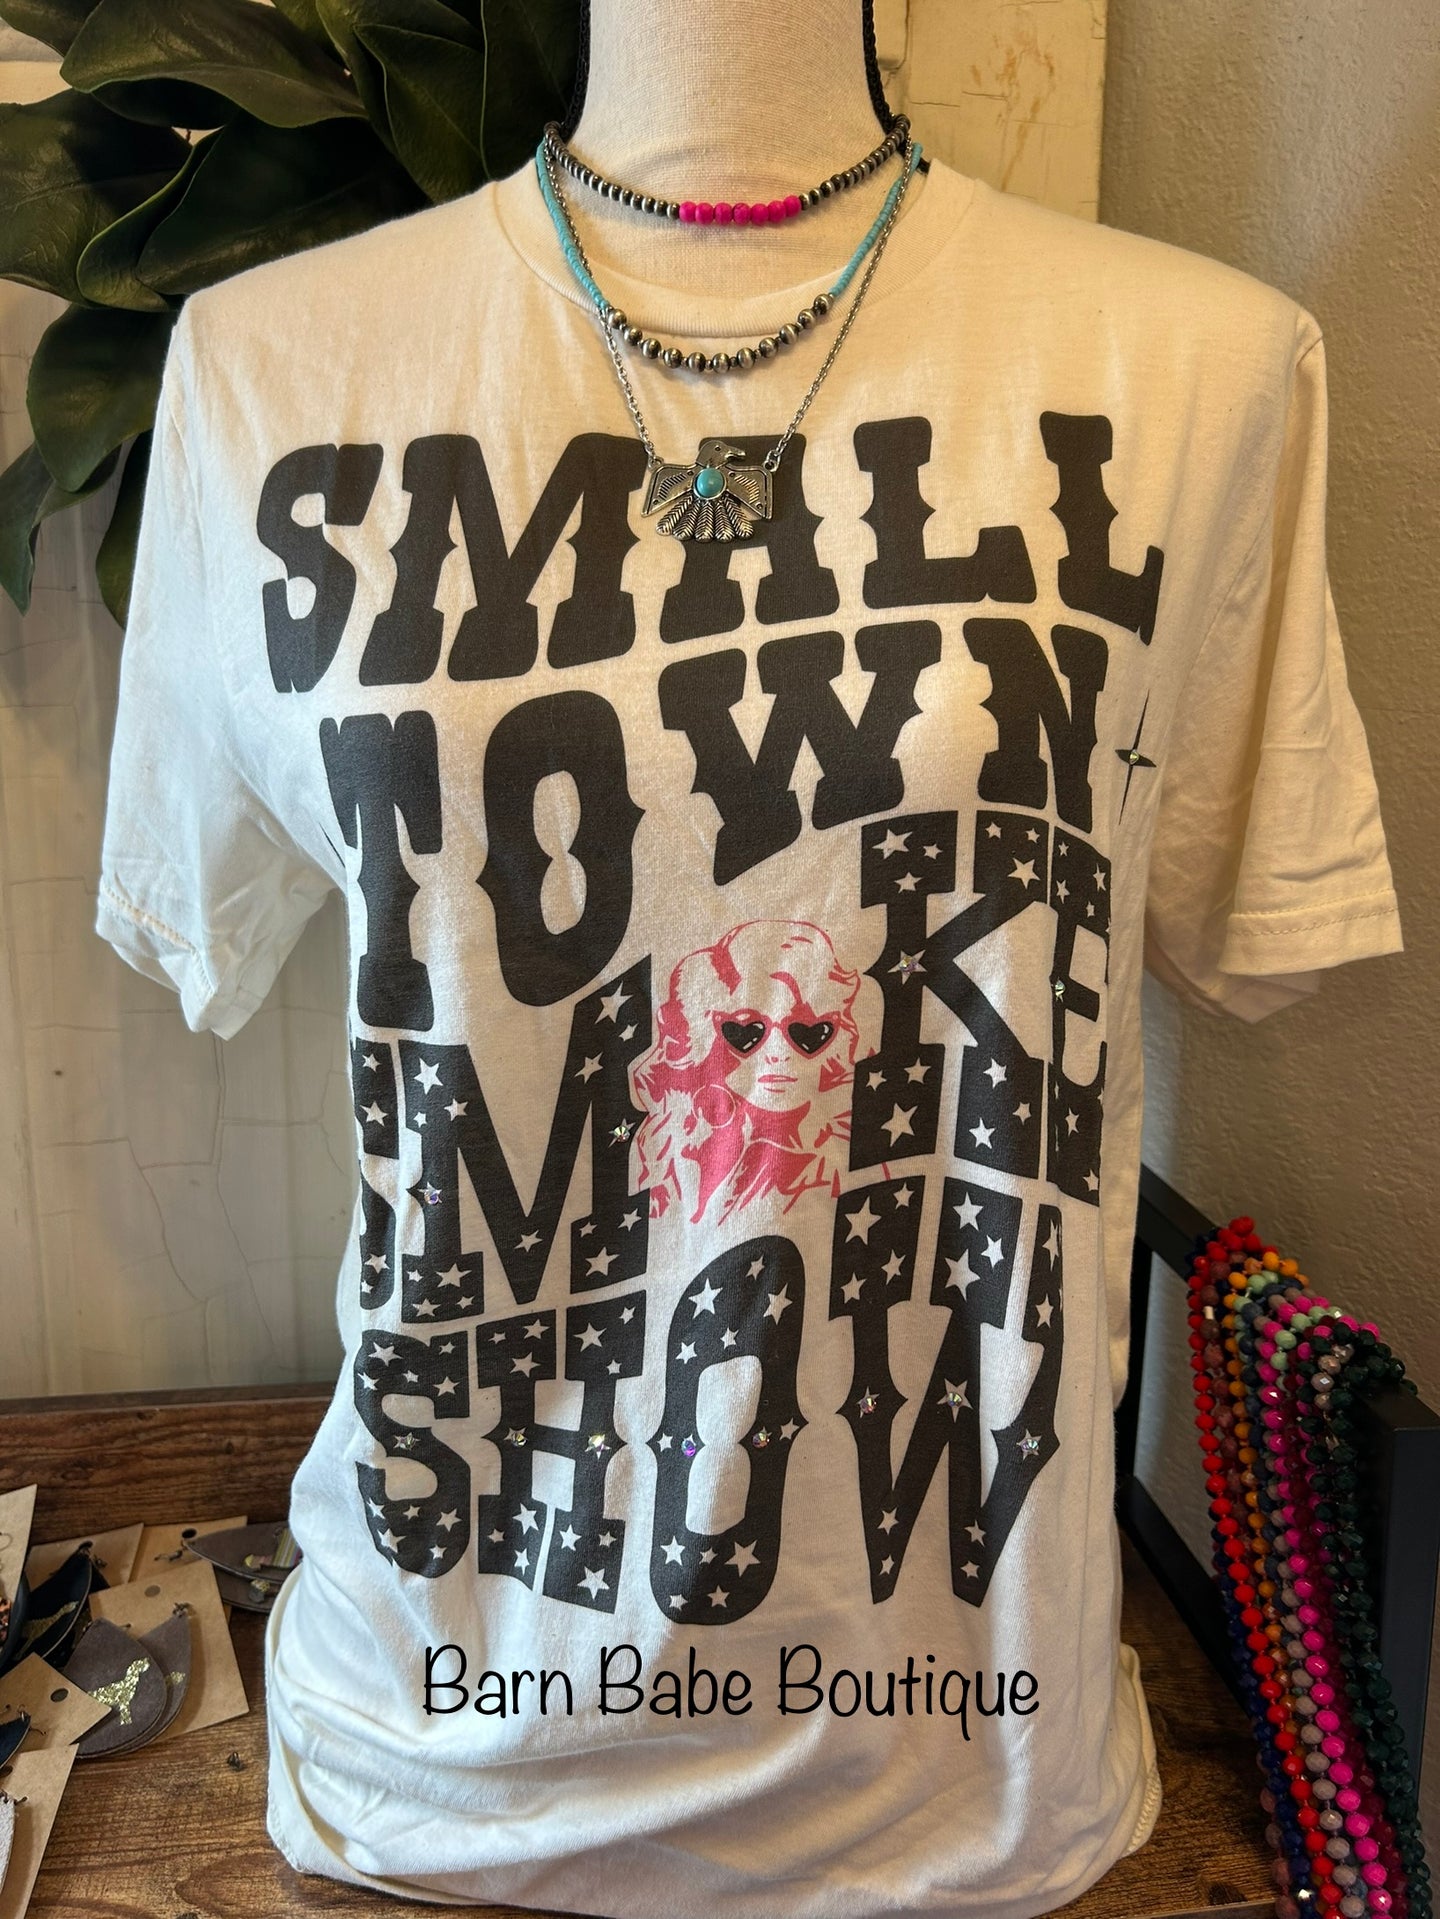 'Small Town Smoke Show' T-shirt